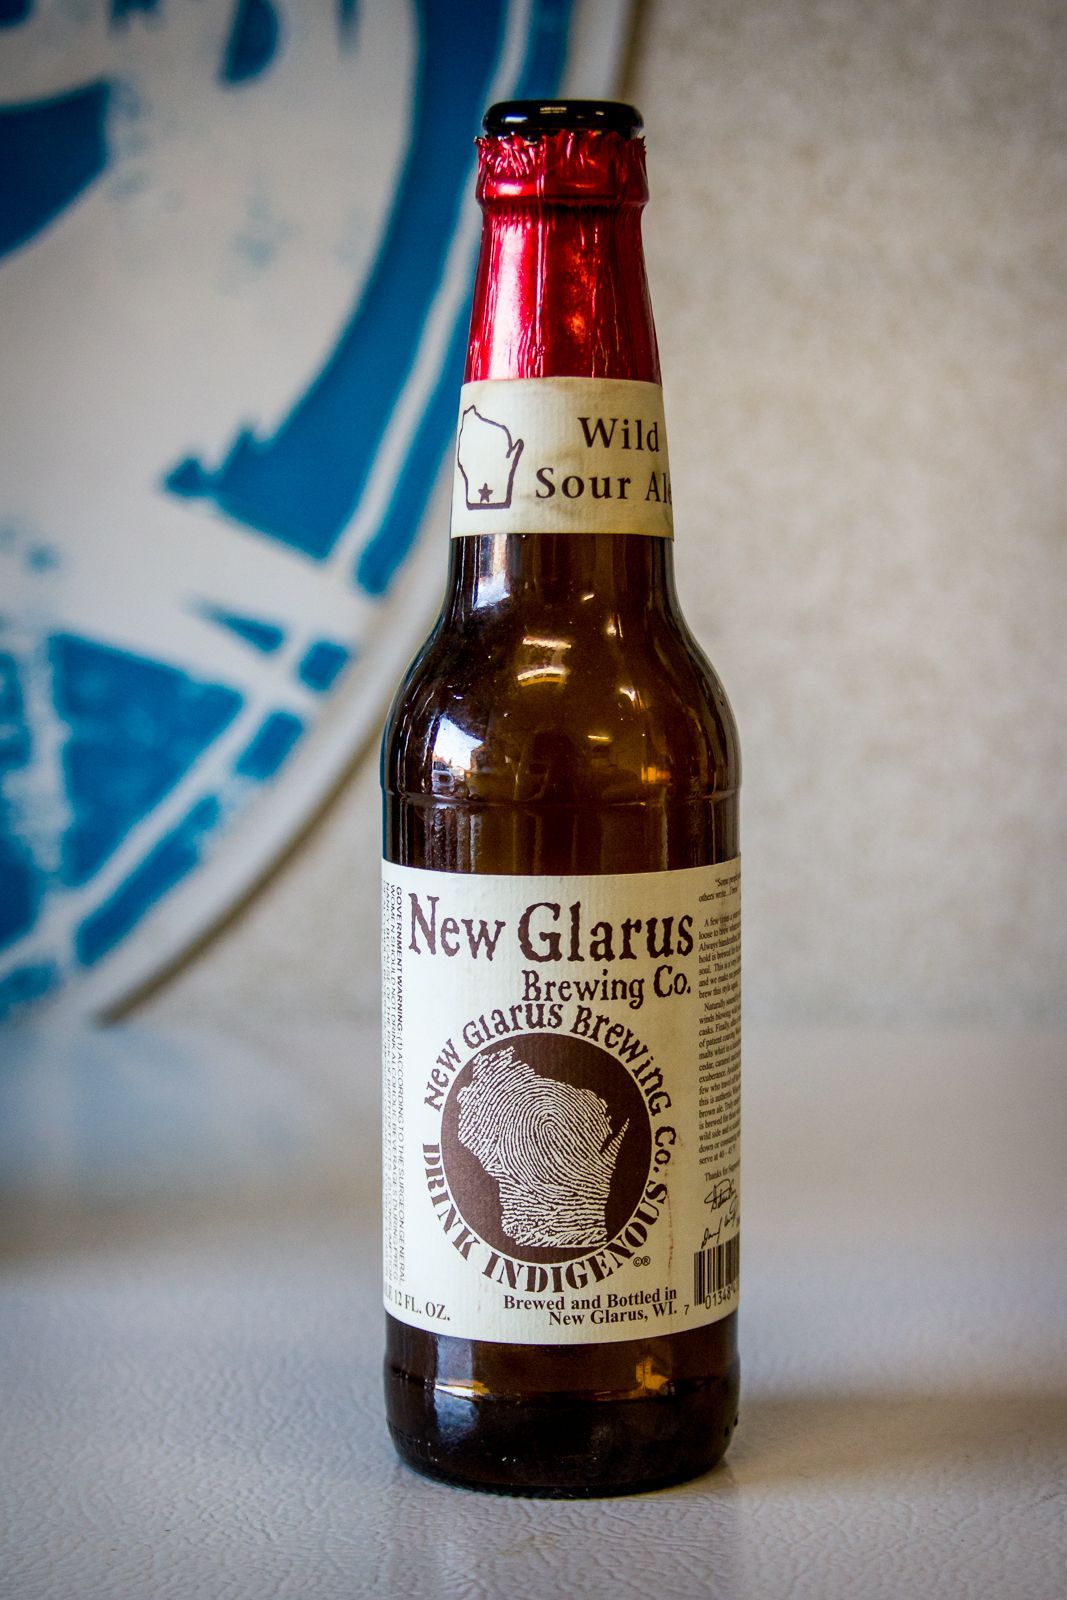 New Glarus Brewing Co. - Wild Sour Ale